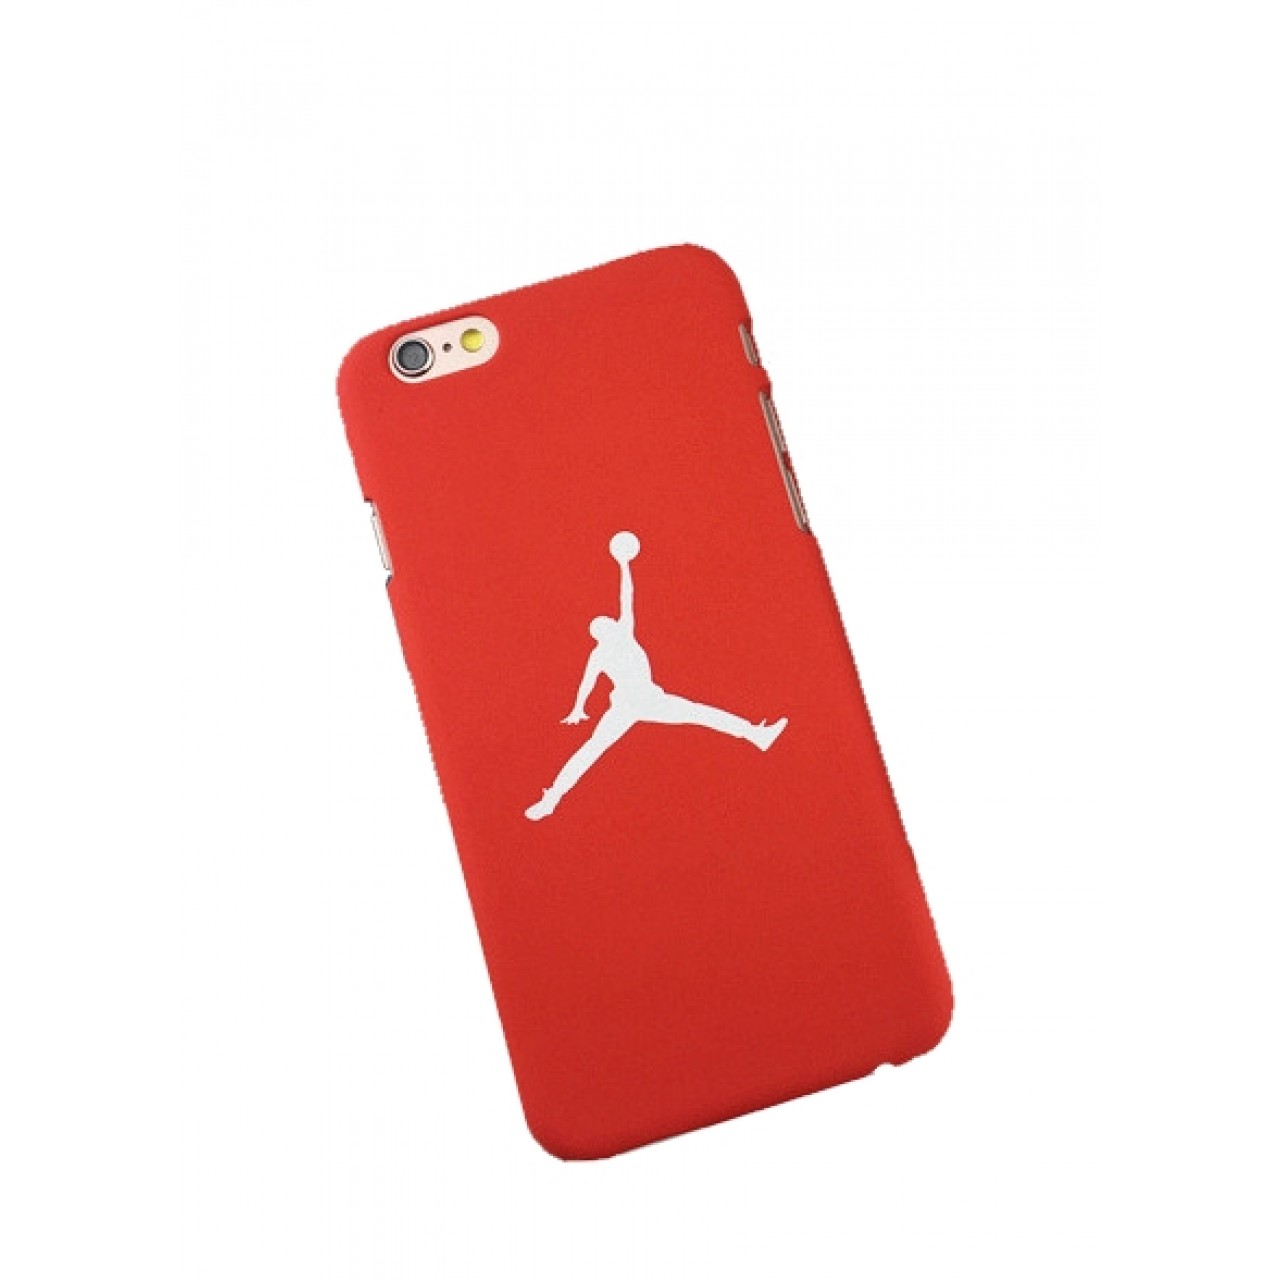 Θήκη iphone 5 / 5s / SE Σκληρή Πλαστική Ματ PC Michael Jordan - 2509 - Κόκκινο - OEM